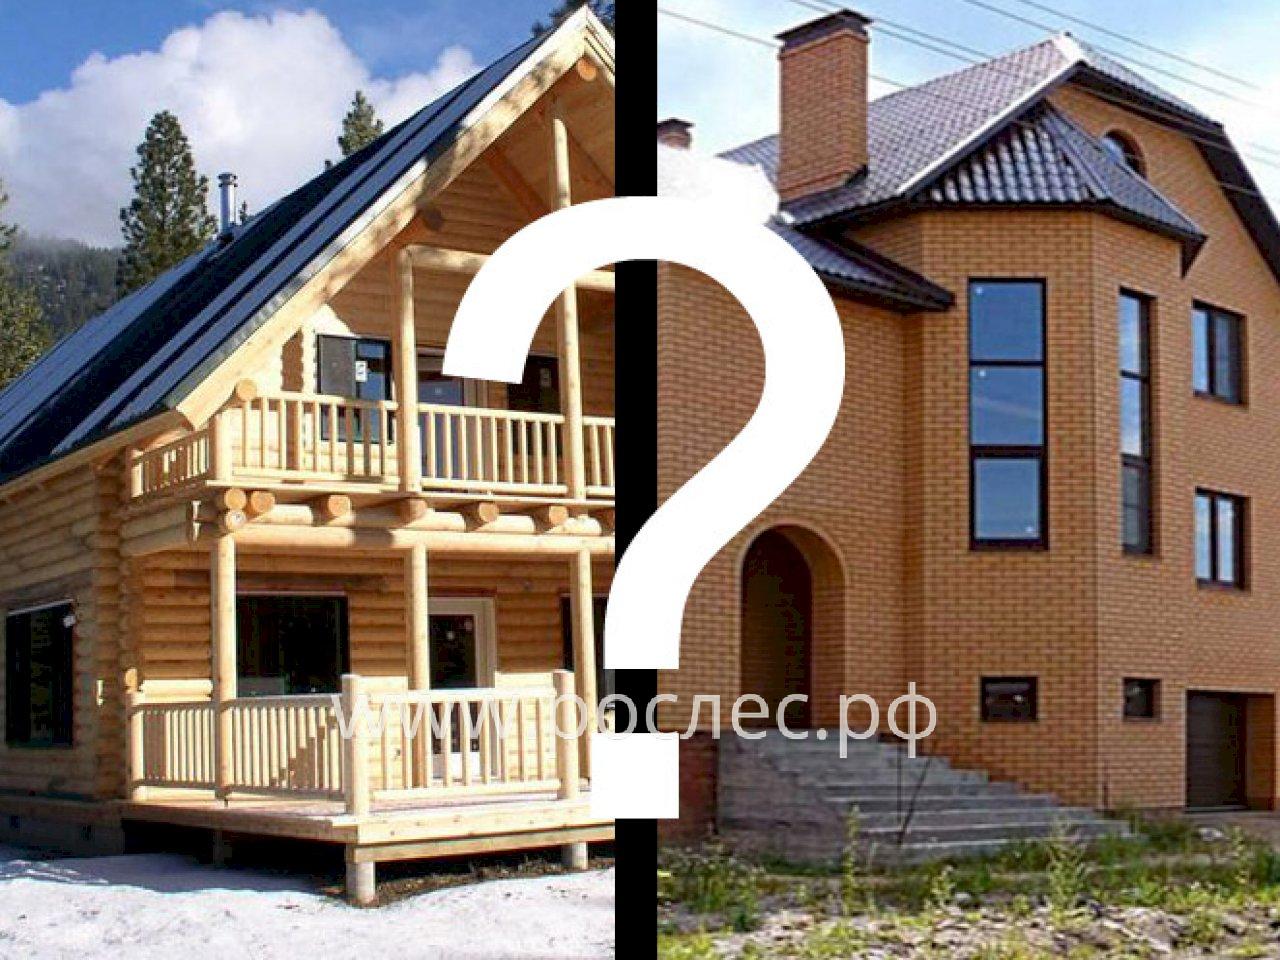 Каменный или деревянный: какой дом выгоднее строить после скачка цен